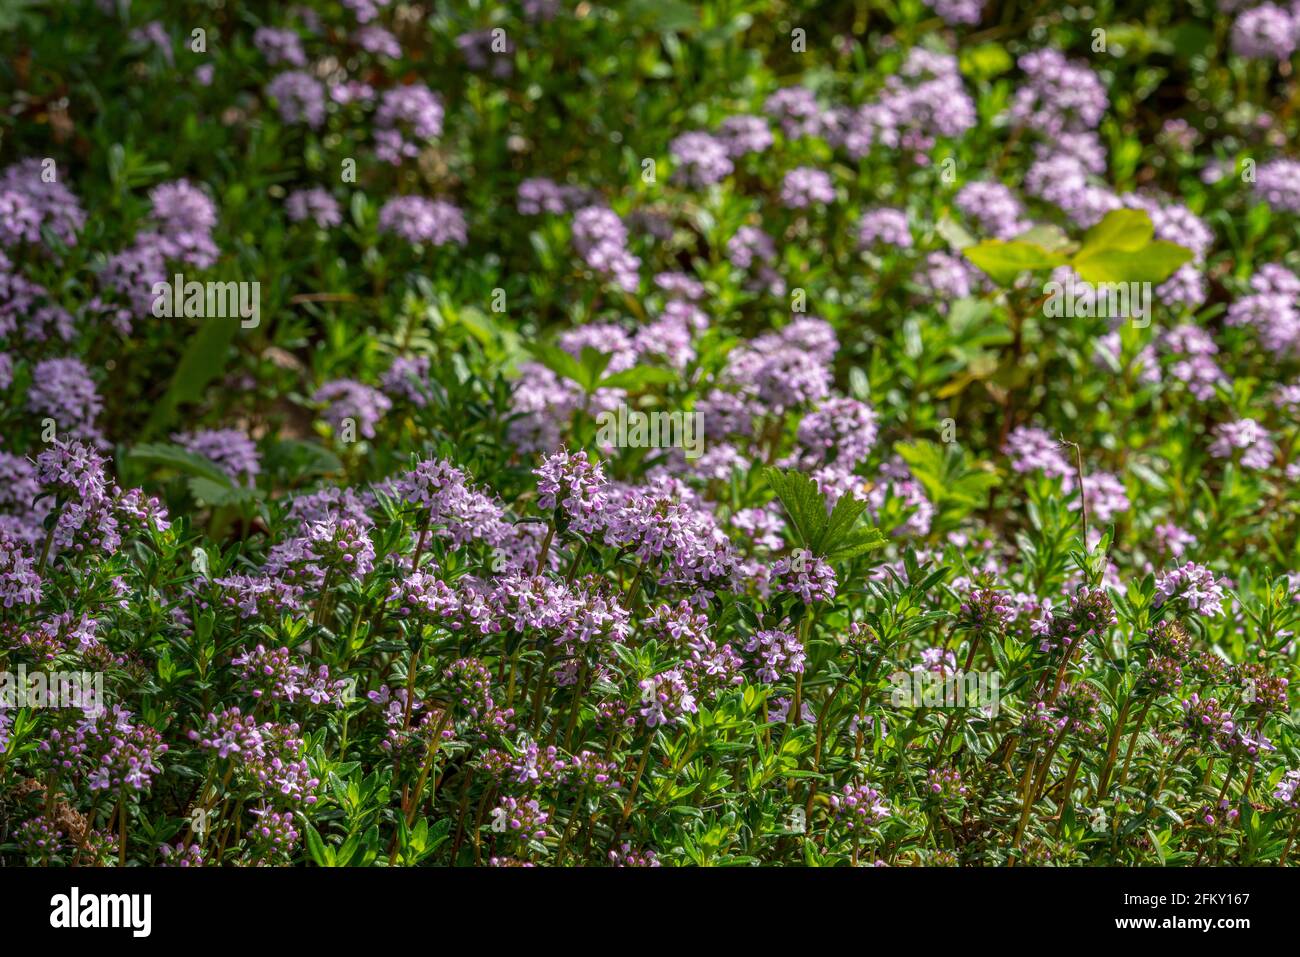 Blühender Strauch des wilden Thymians, Thymus serpyllum, eine der am weitesten verbreiteten Thymianarten, die für kulinarische und medizinische Zwecke verwendet wird.Abruzzen. Italien Stockfoto